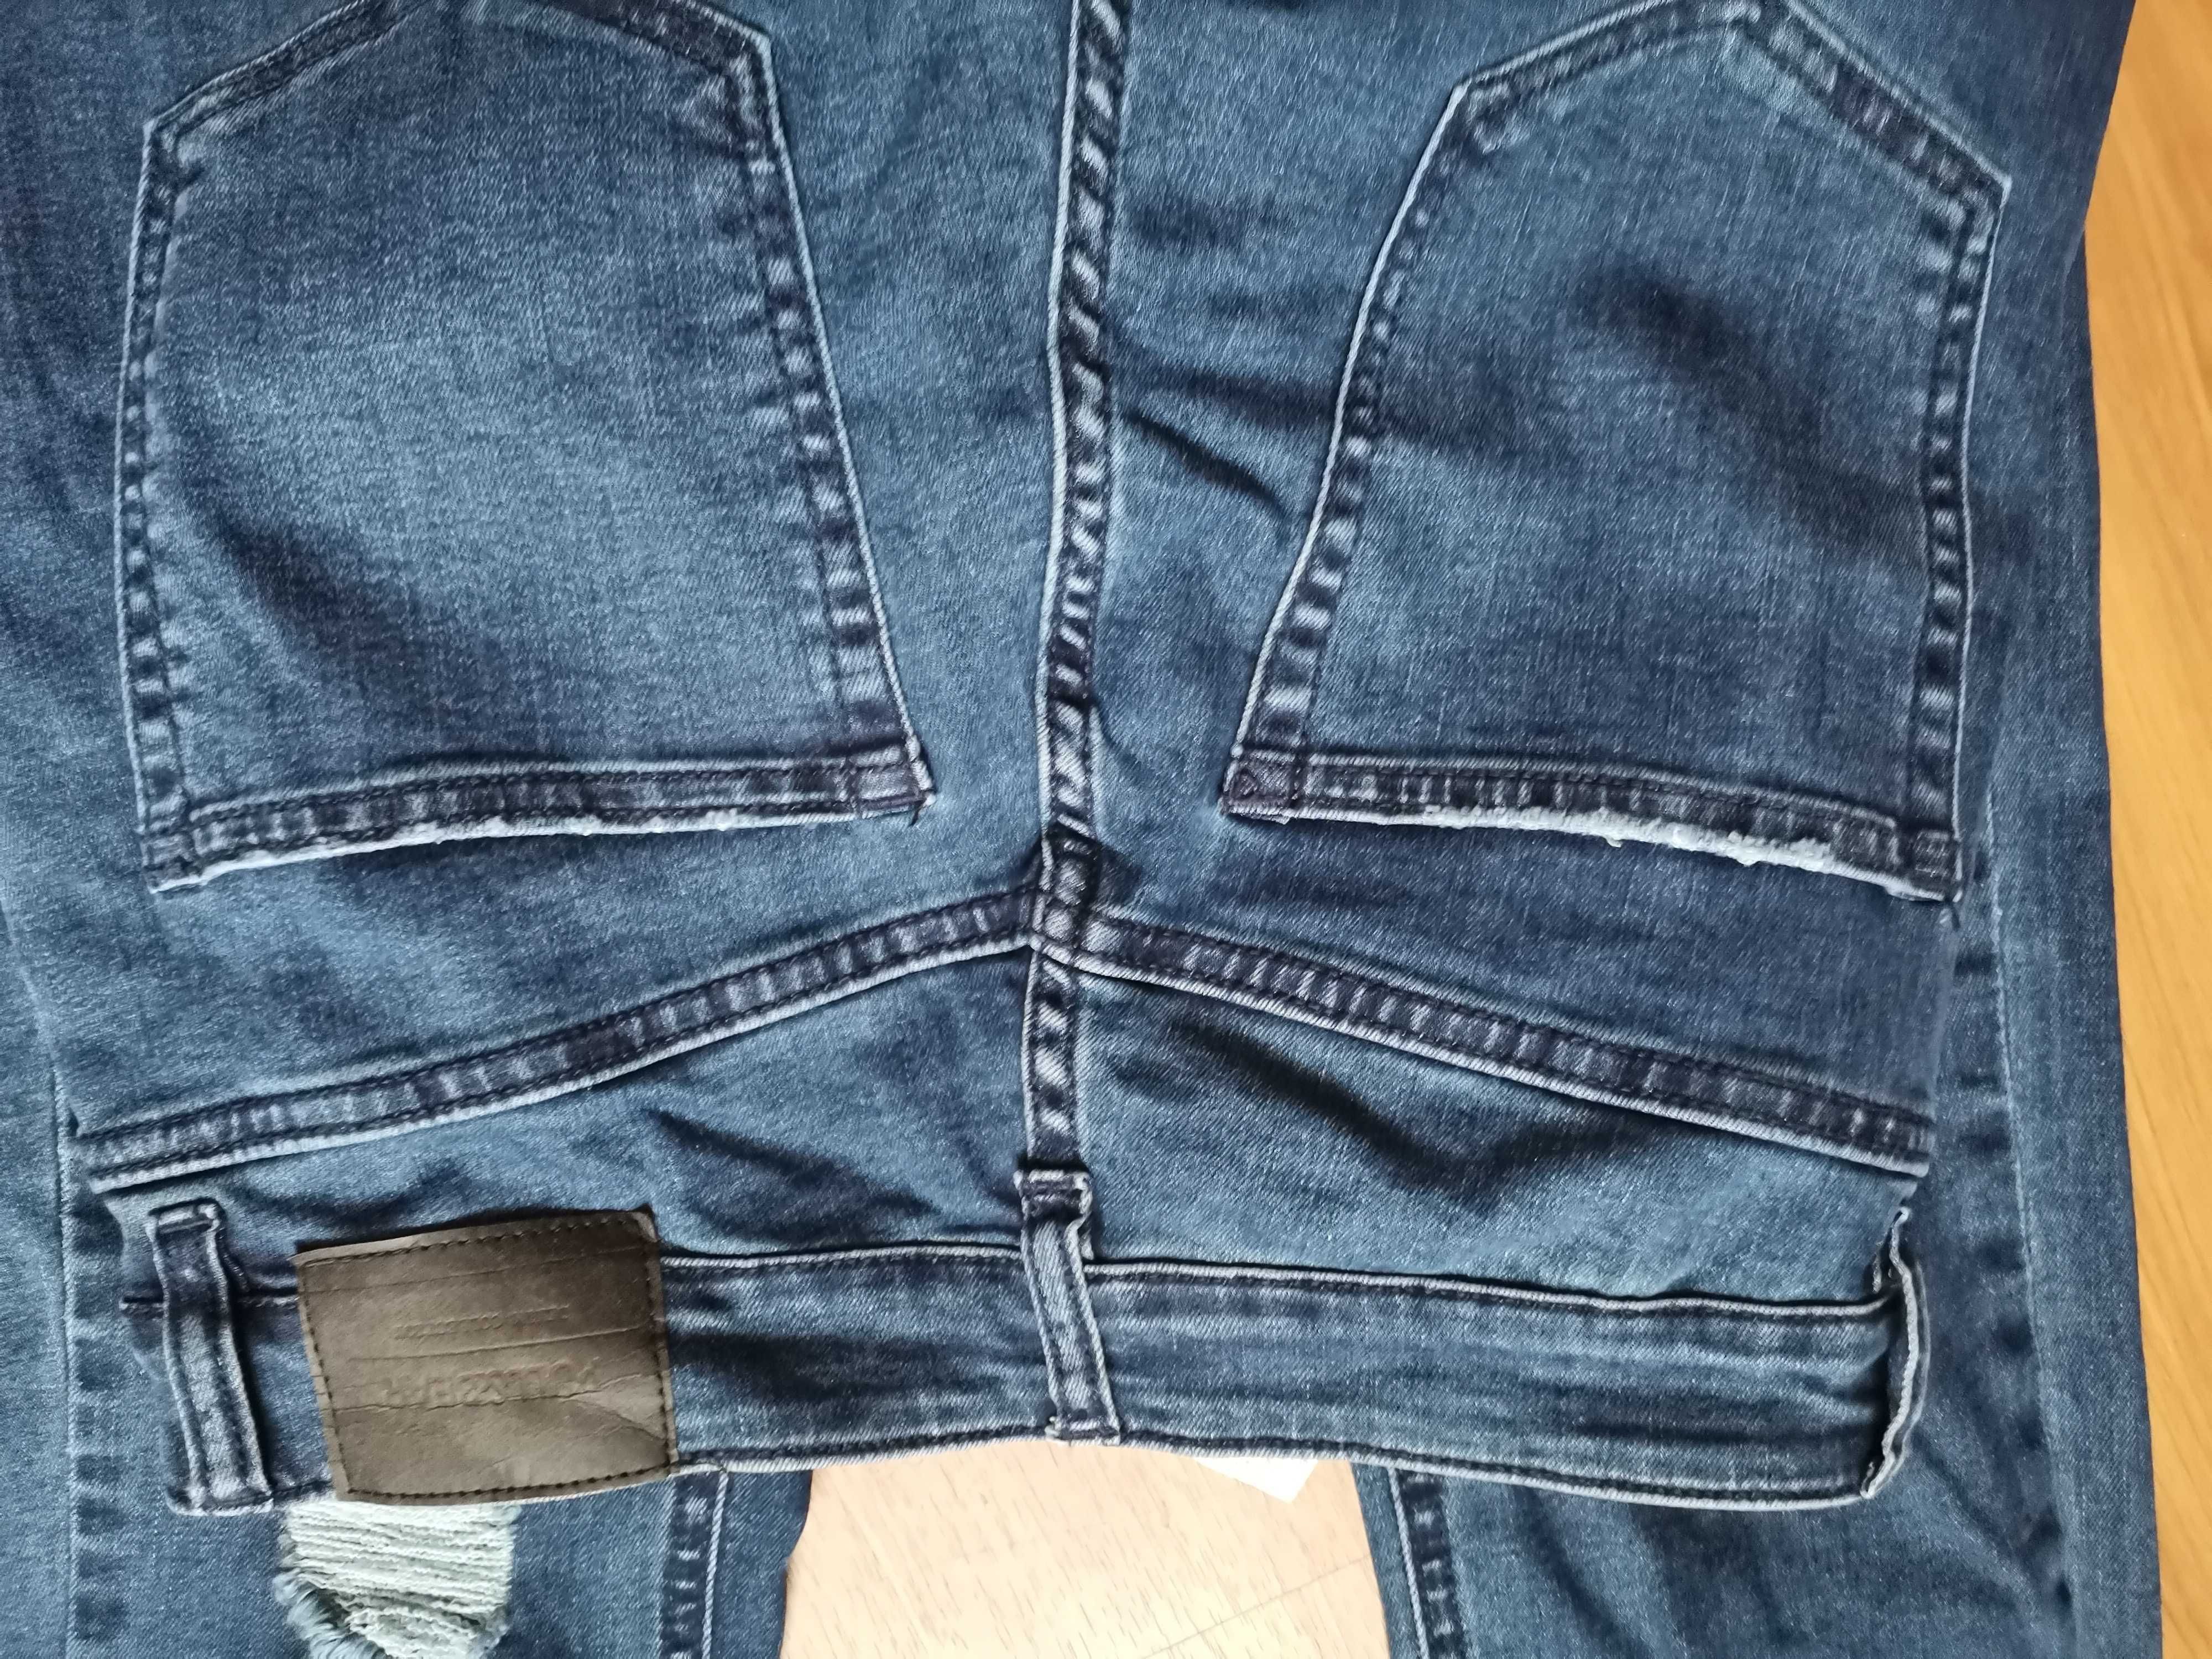 Spodnie jeansowe przetarcia, rozmiar M, Nowe bez metki.